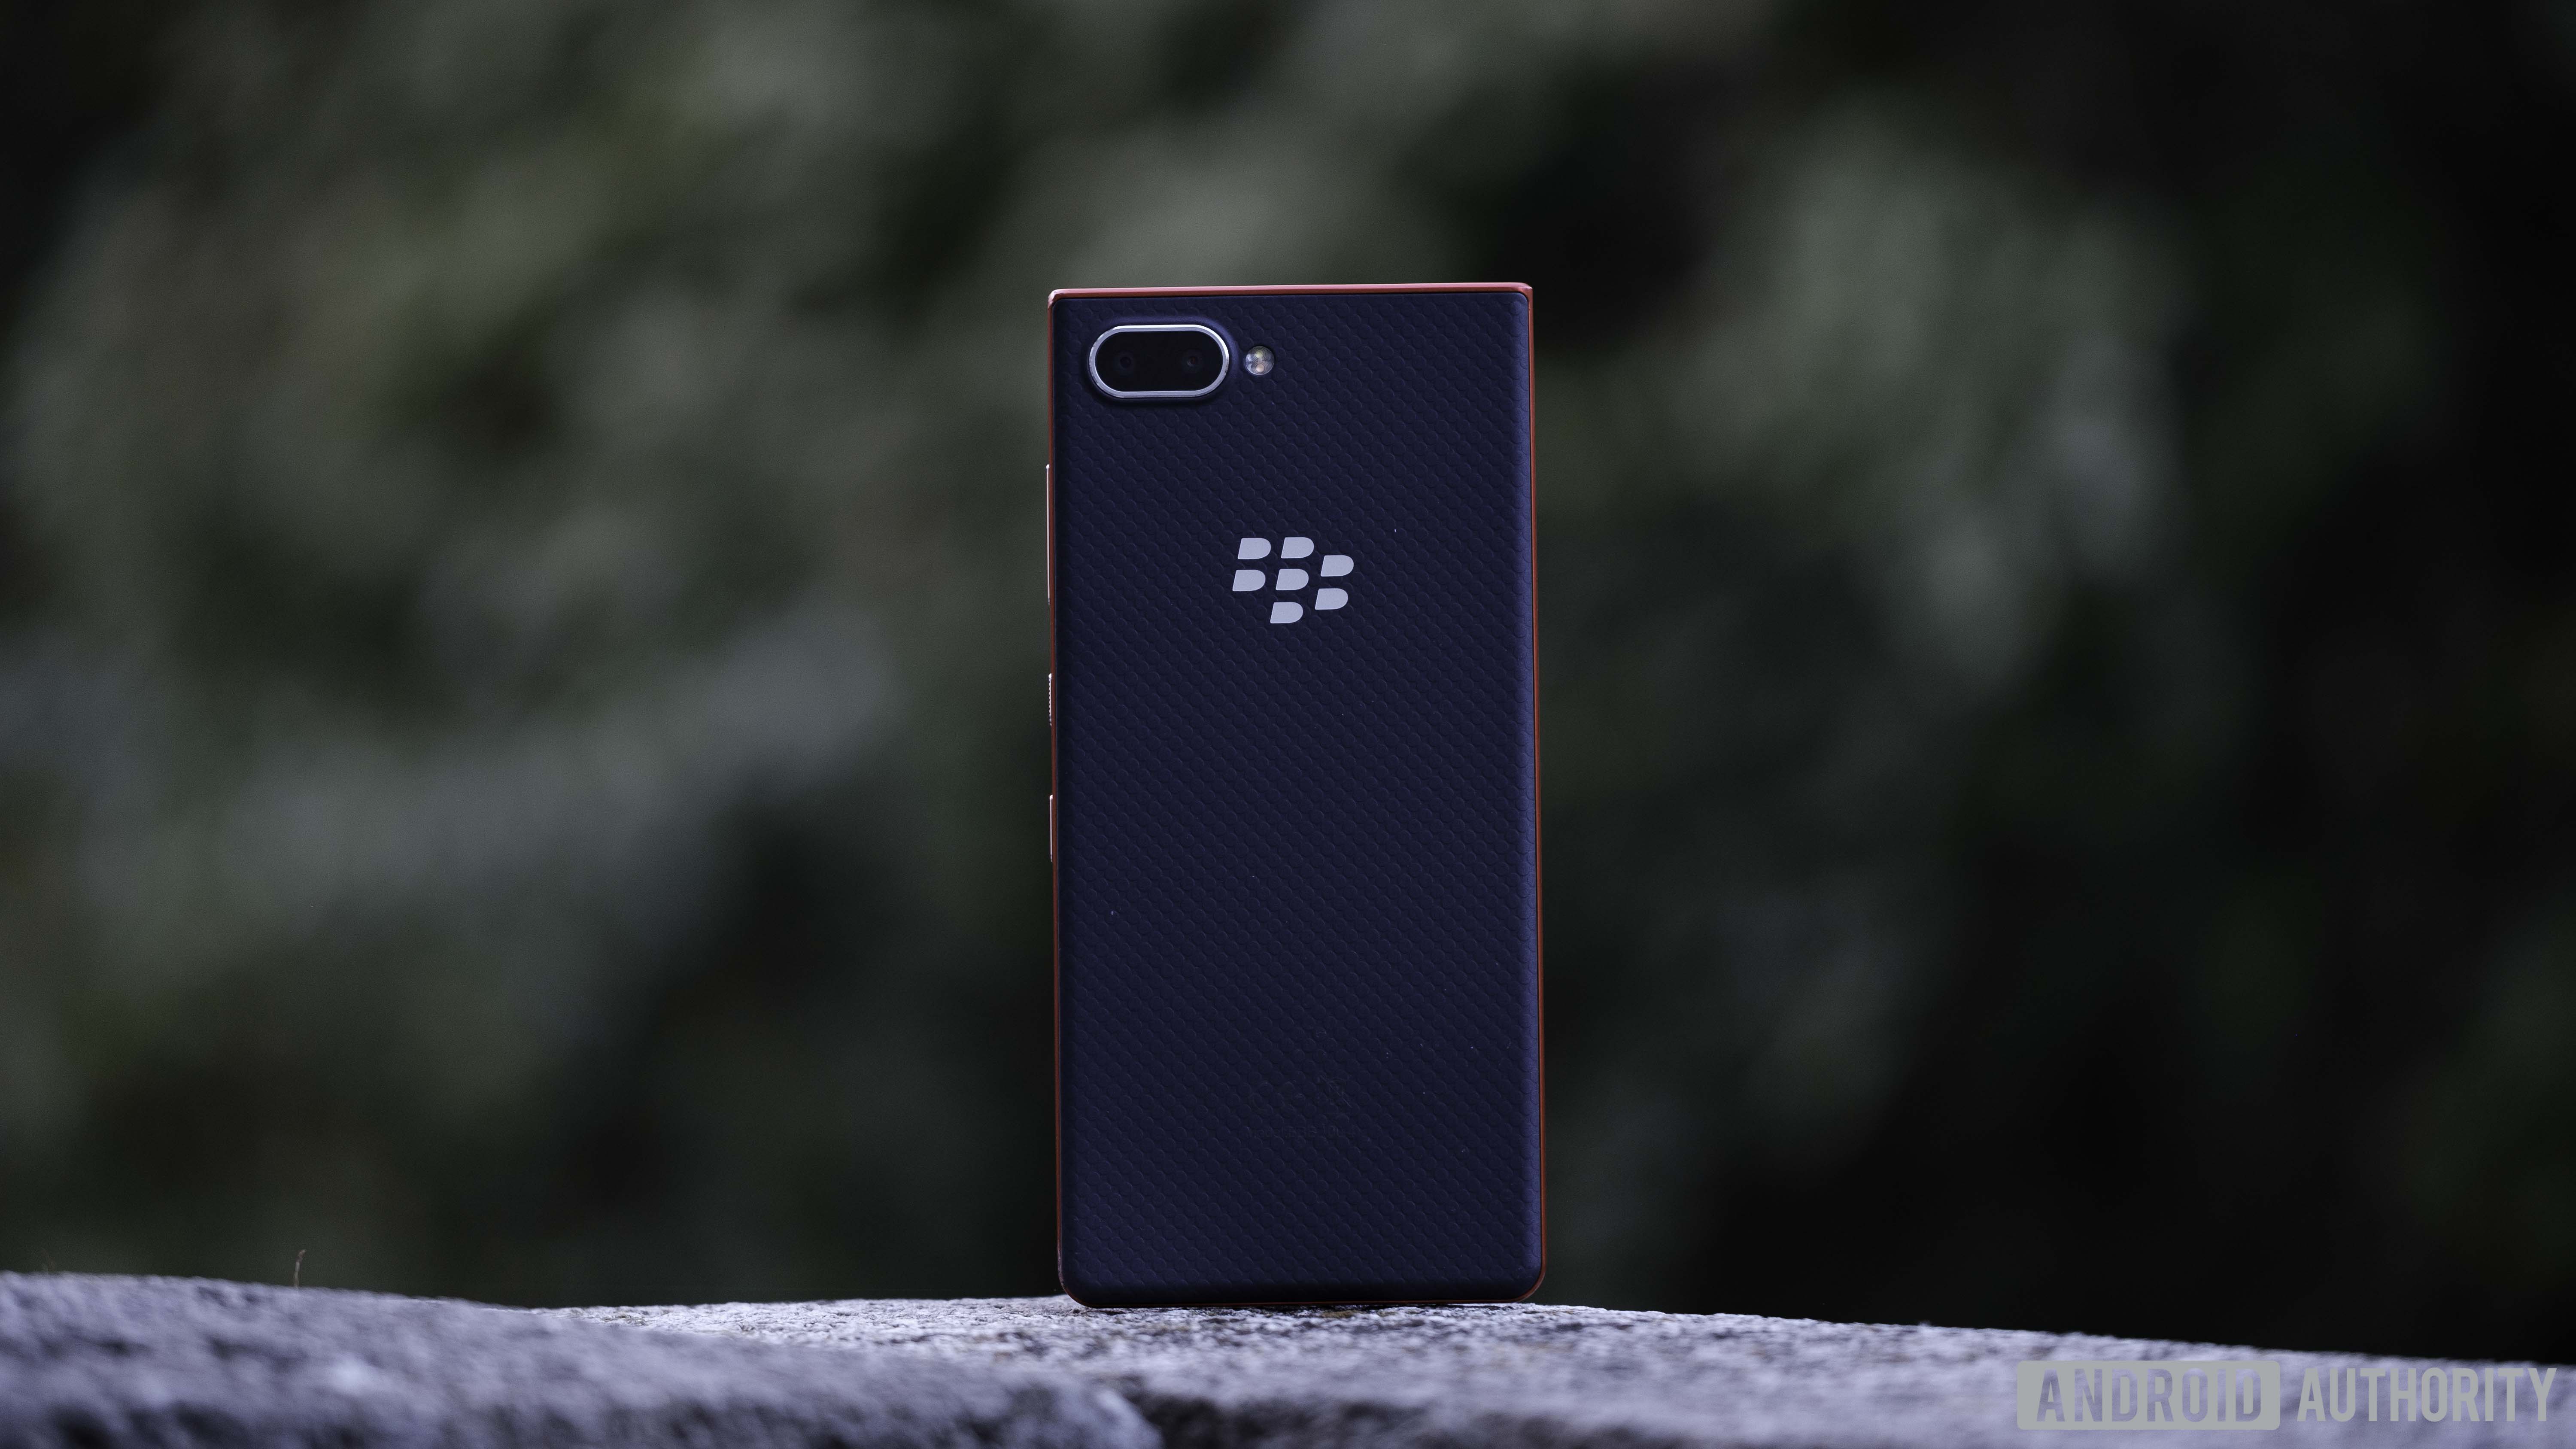 Blackberry Key2 LE color atómico que muestra la parte posterior afelpada, las cámaras duales y el logotipo de Blackberry